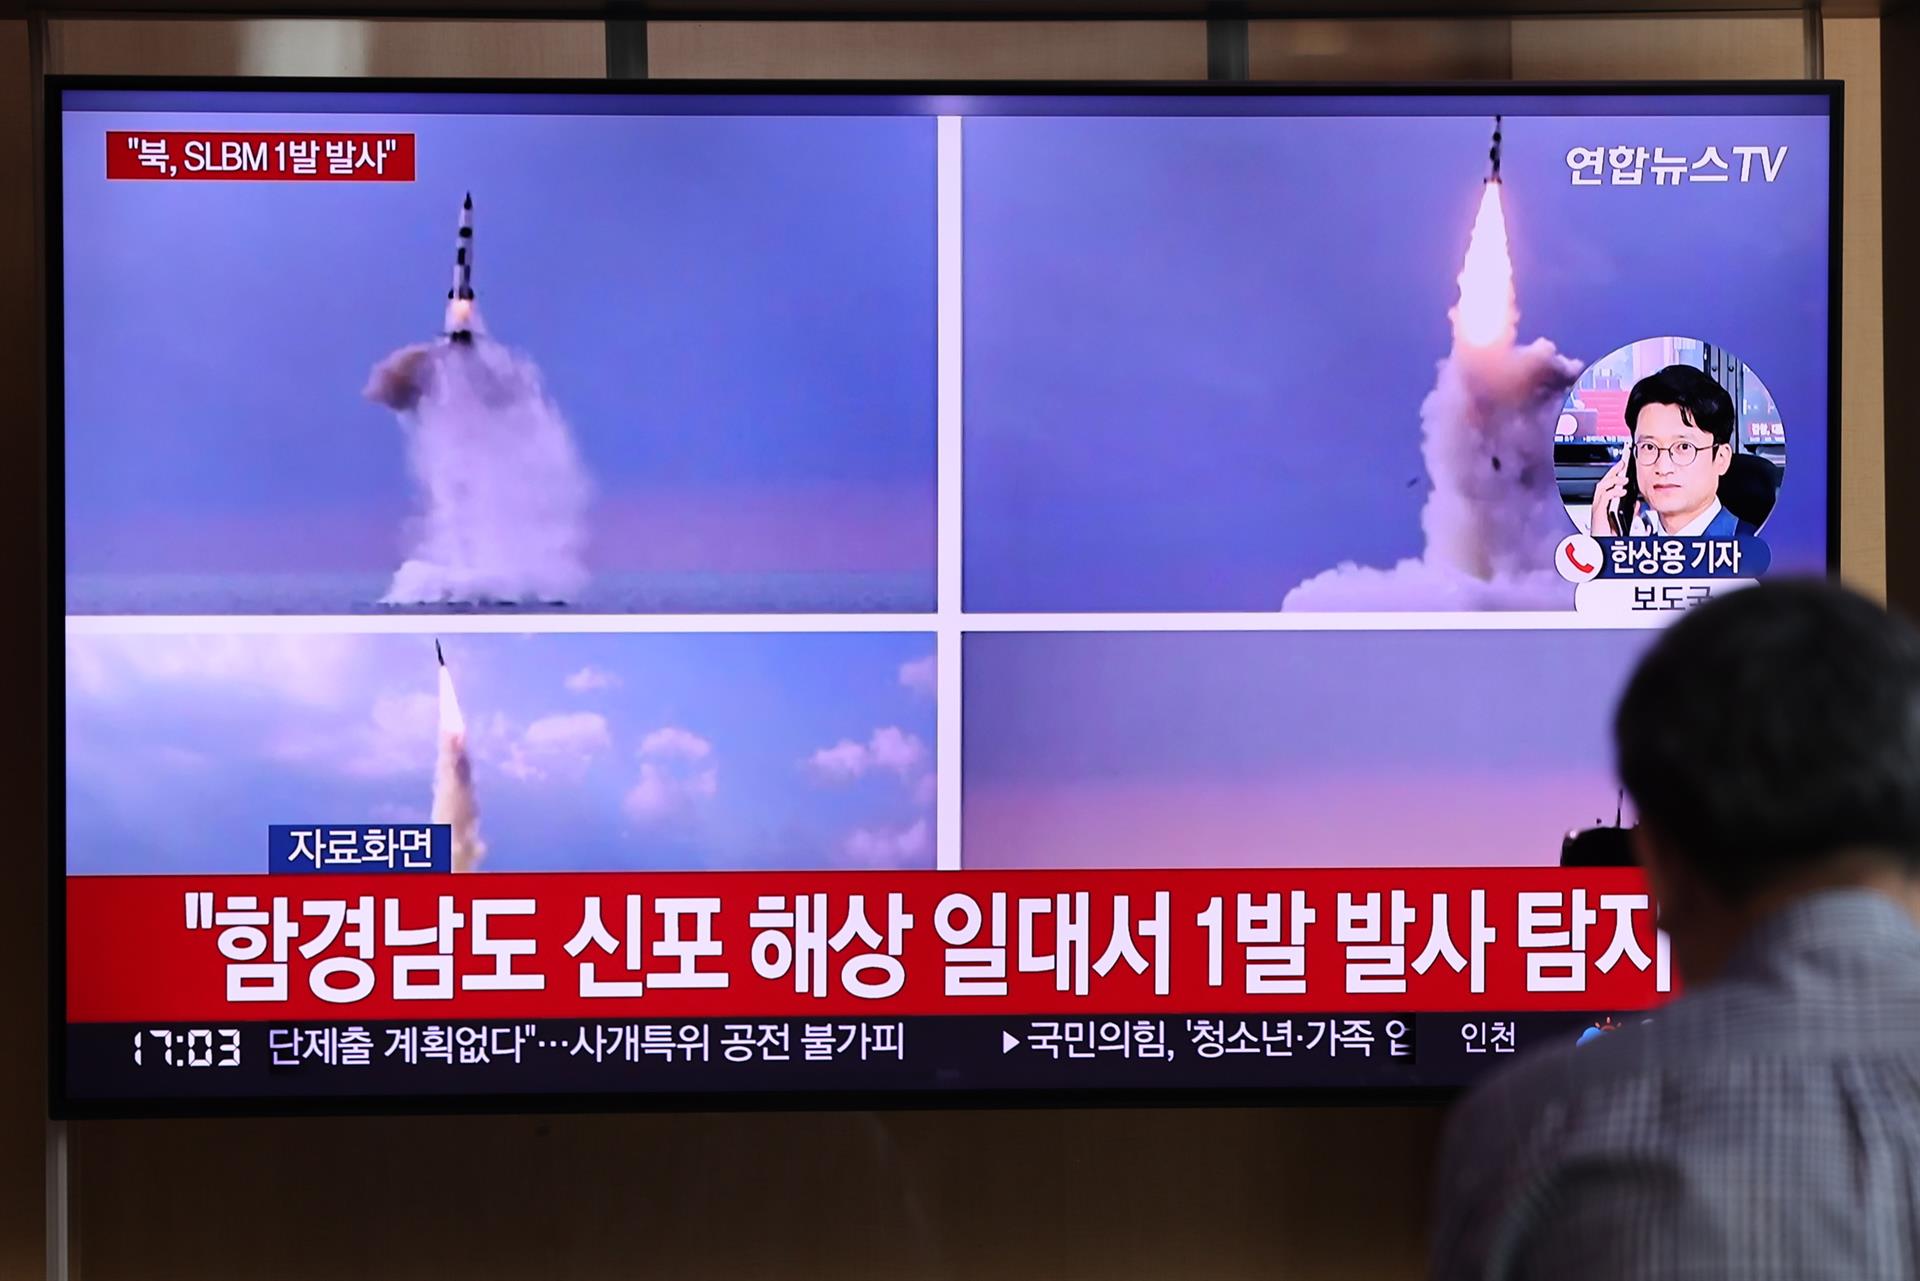 Corea del Sur anunció sanciones contra Pionyang tras lanzamiento de misiles